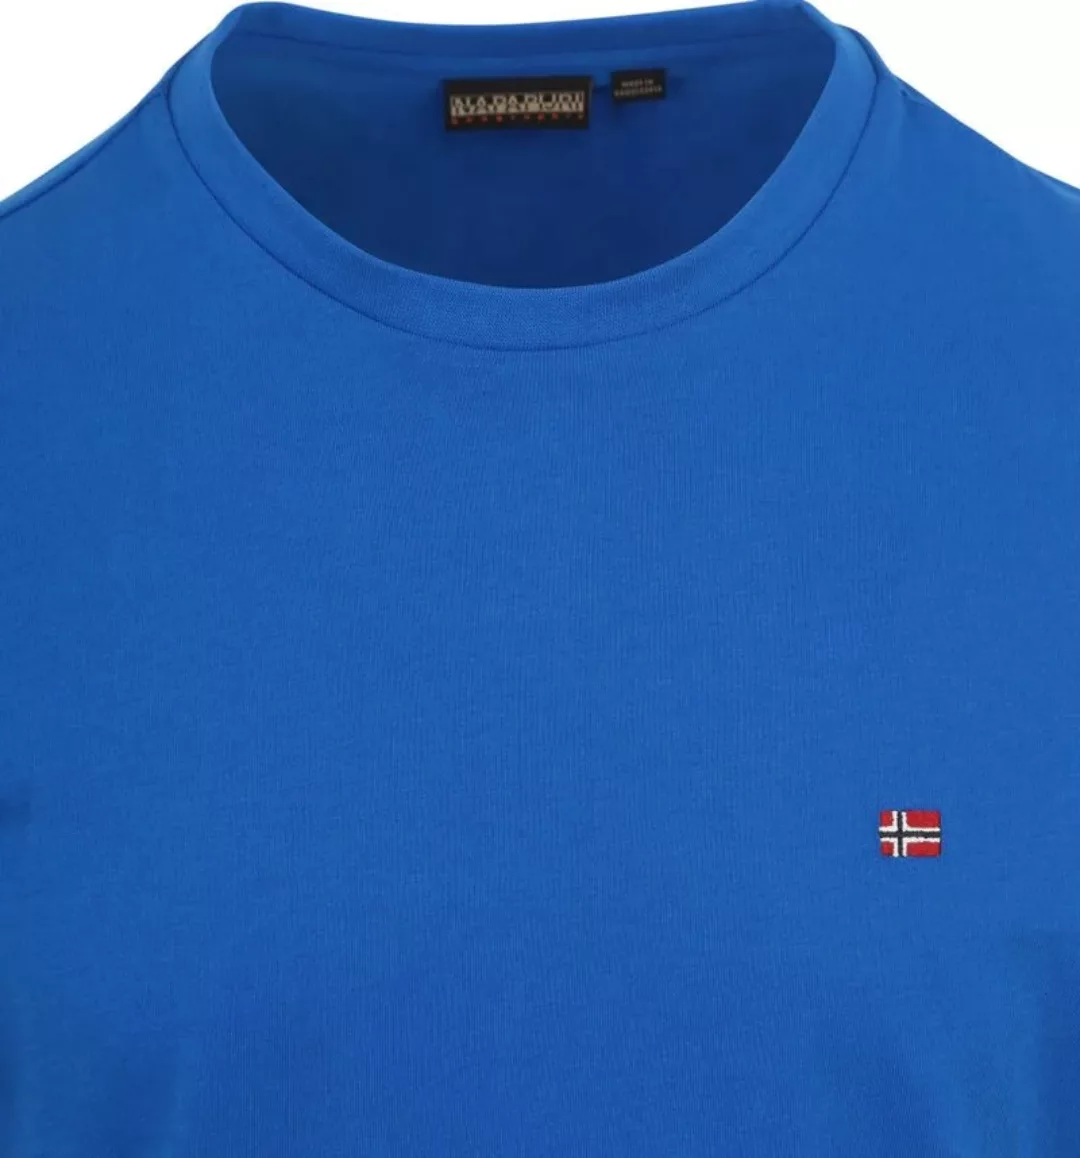 Napapijri Salis T-shirt Kobaltblau - Größe M günstig online kaufen